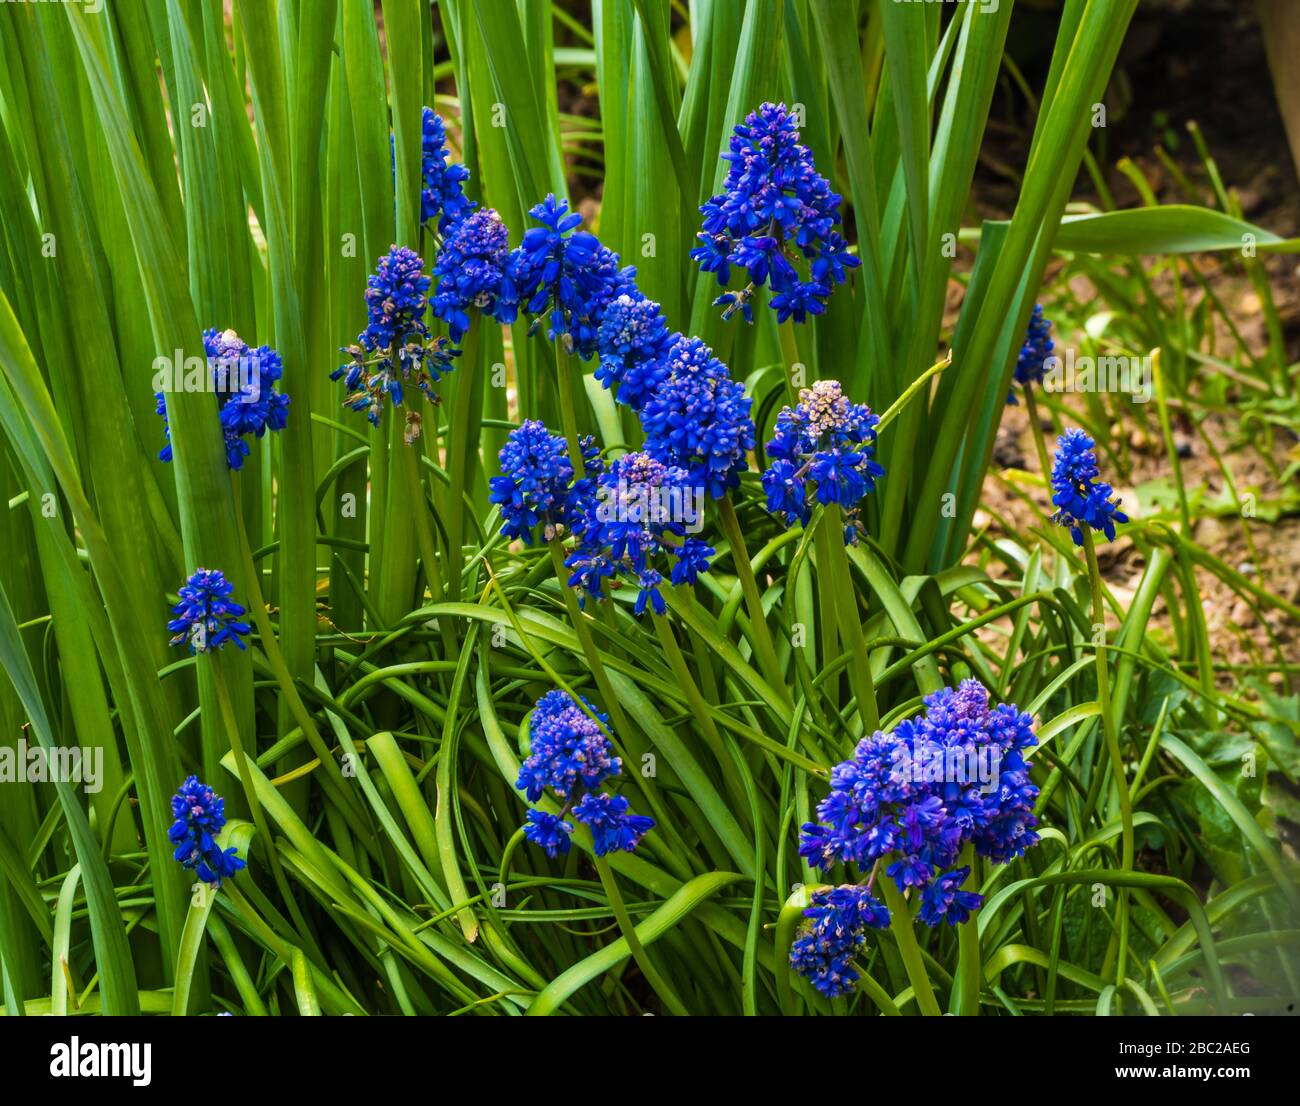 Muscari Blue Spike creciendo en un jardín privado. Foto de stock